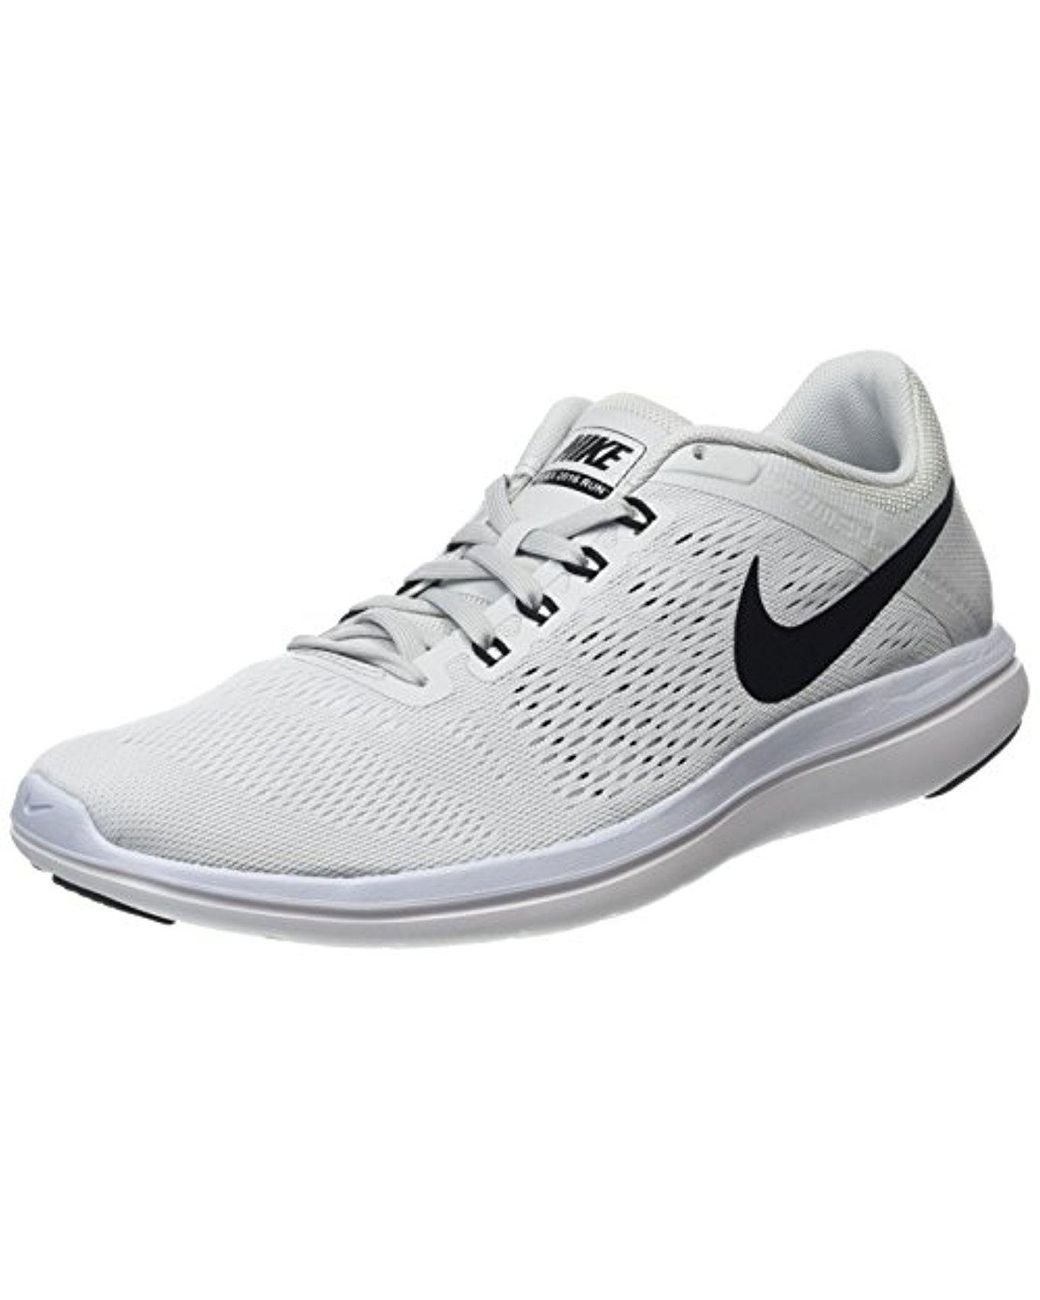 Flex 2016 Rn Running Shoes in White | Lyst